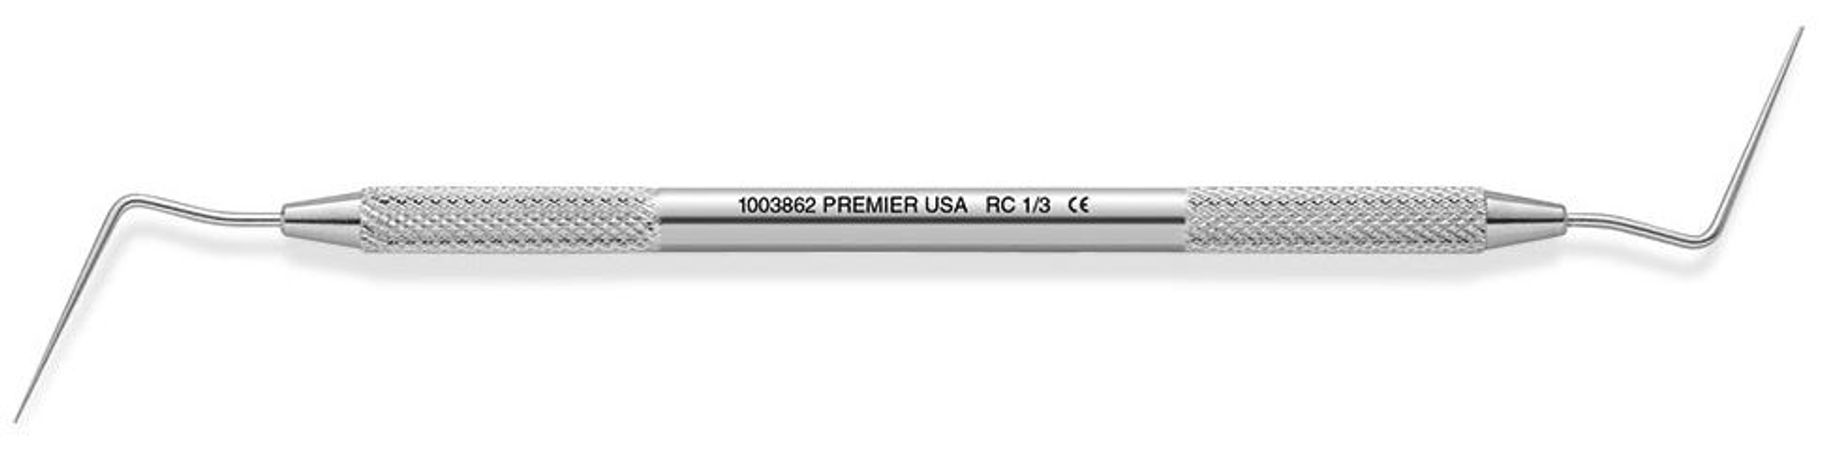 Premier - Model RC 1/3 - Pluggers